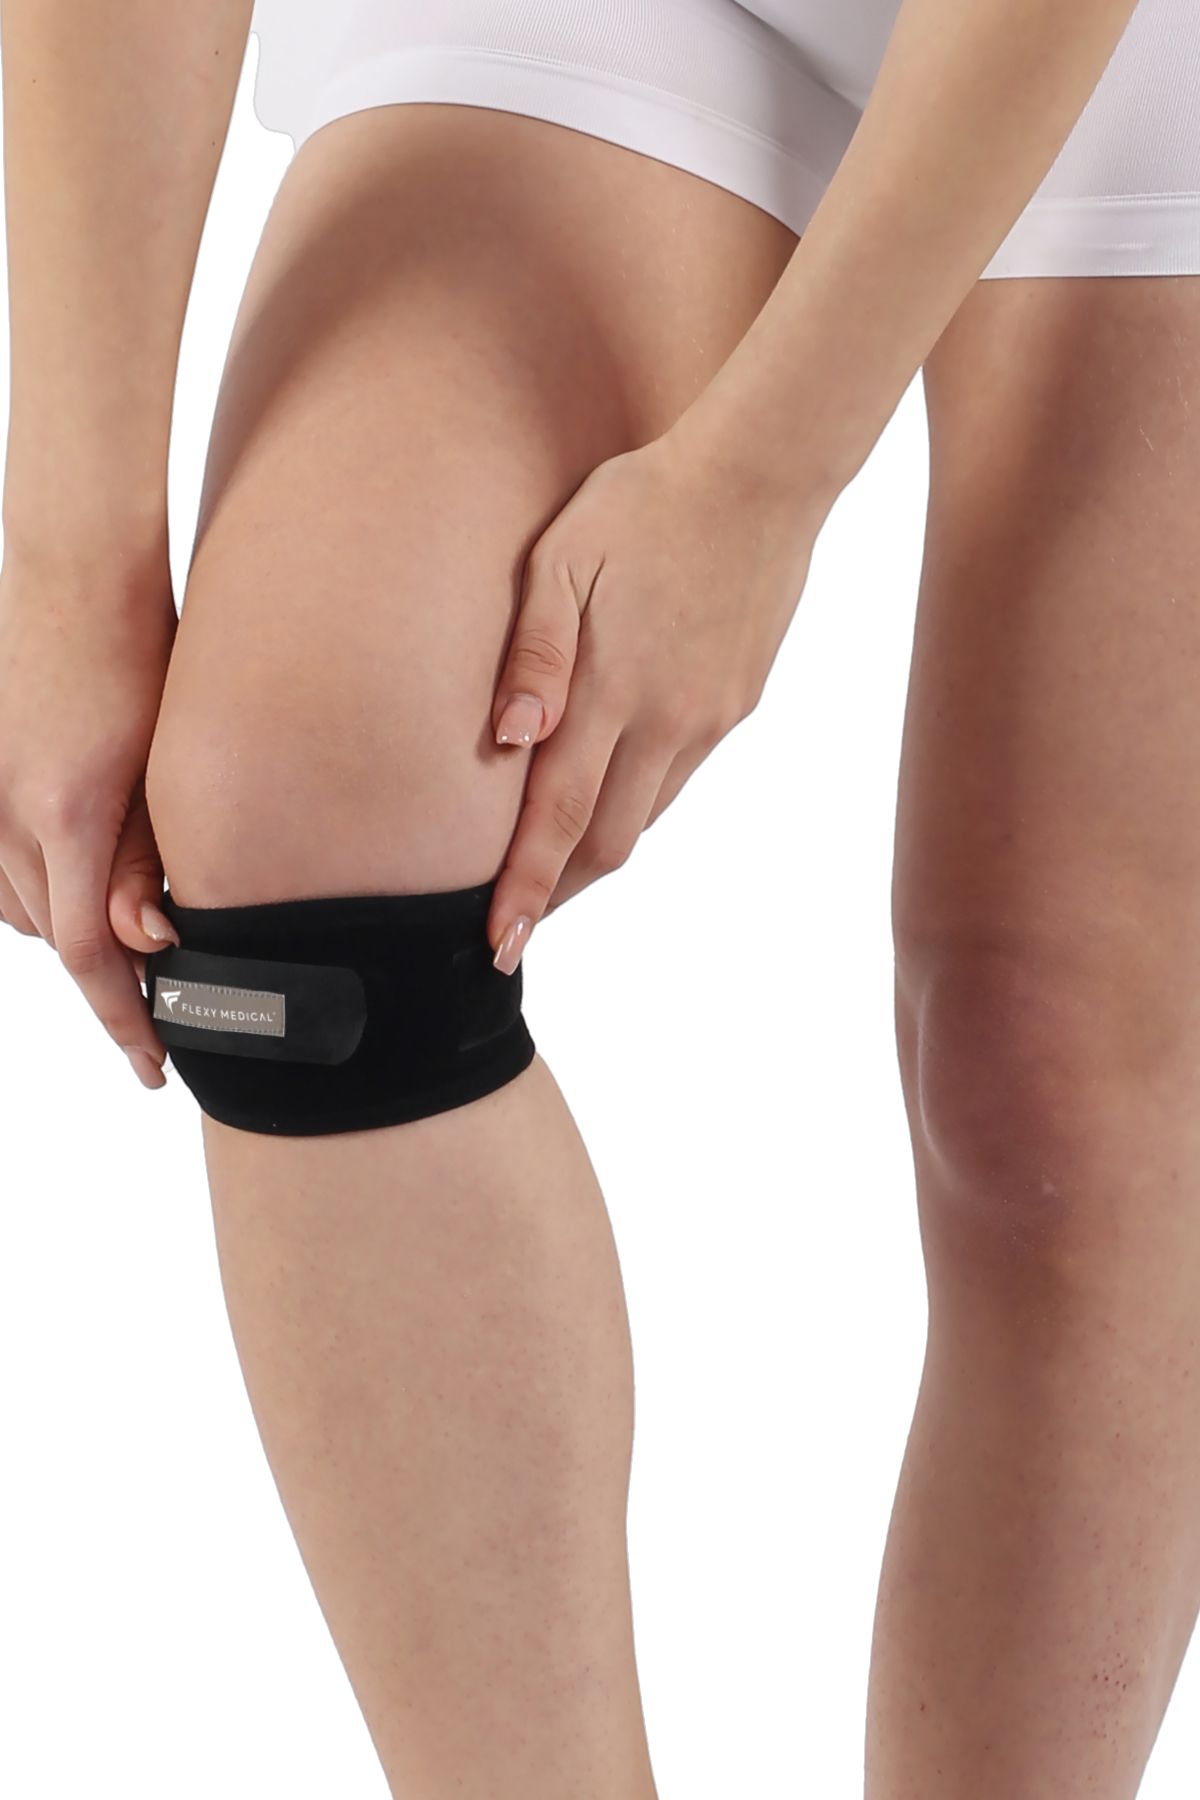 Flexy Medical Patella Tendon Stabilizasyon Sporcu Bandajı 2 Adet Silikon Ped Destekli Ve Diz Ağrılarında Rahatlama